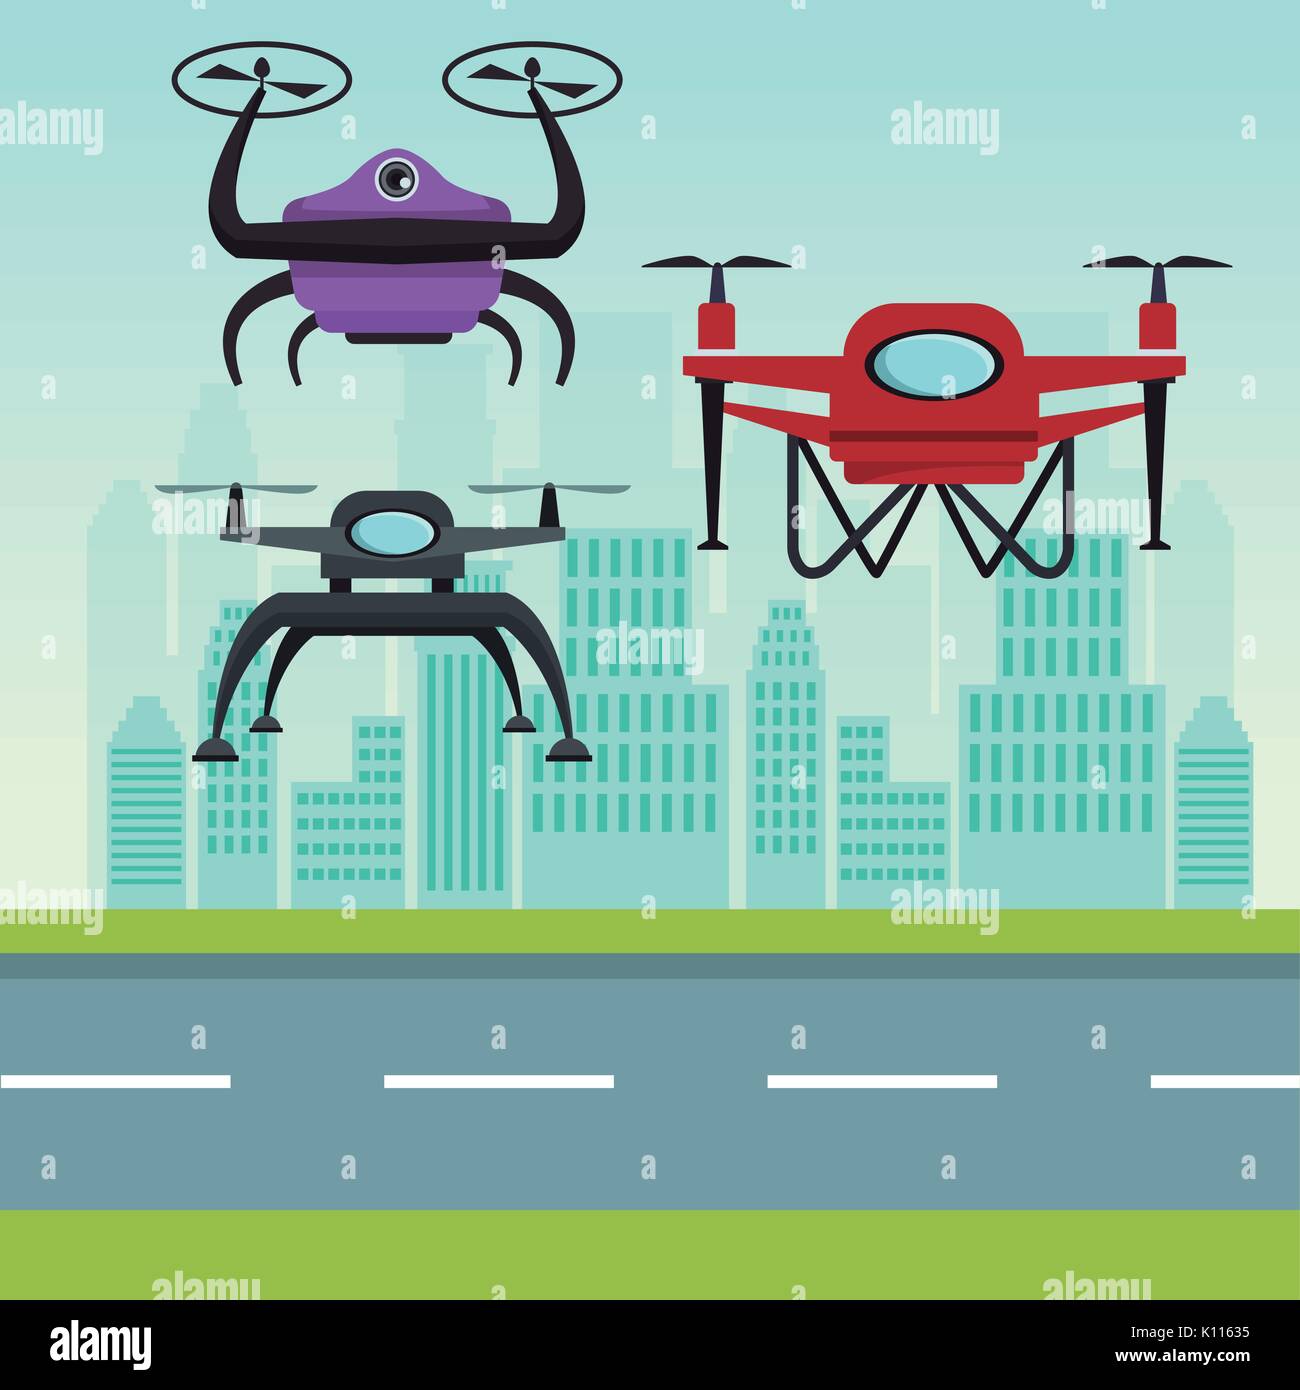 Paysage ciel avec des bâtiments et scène de rue avec des drones robot moderne avec deux hélice battant et base Illustration de Vecteur